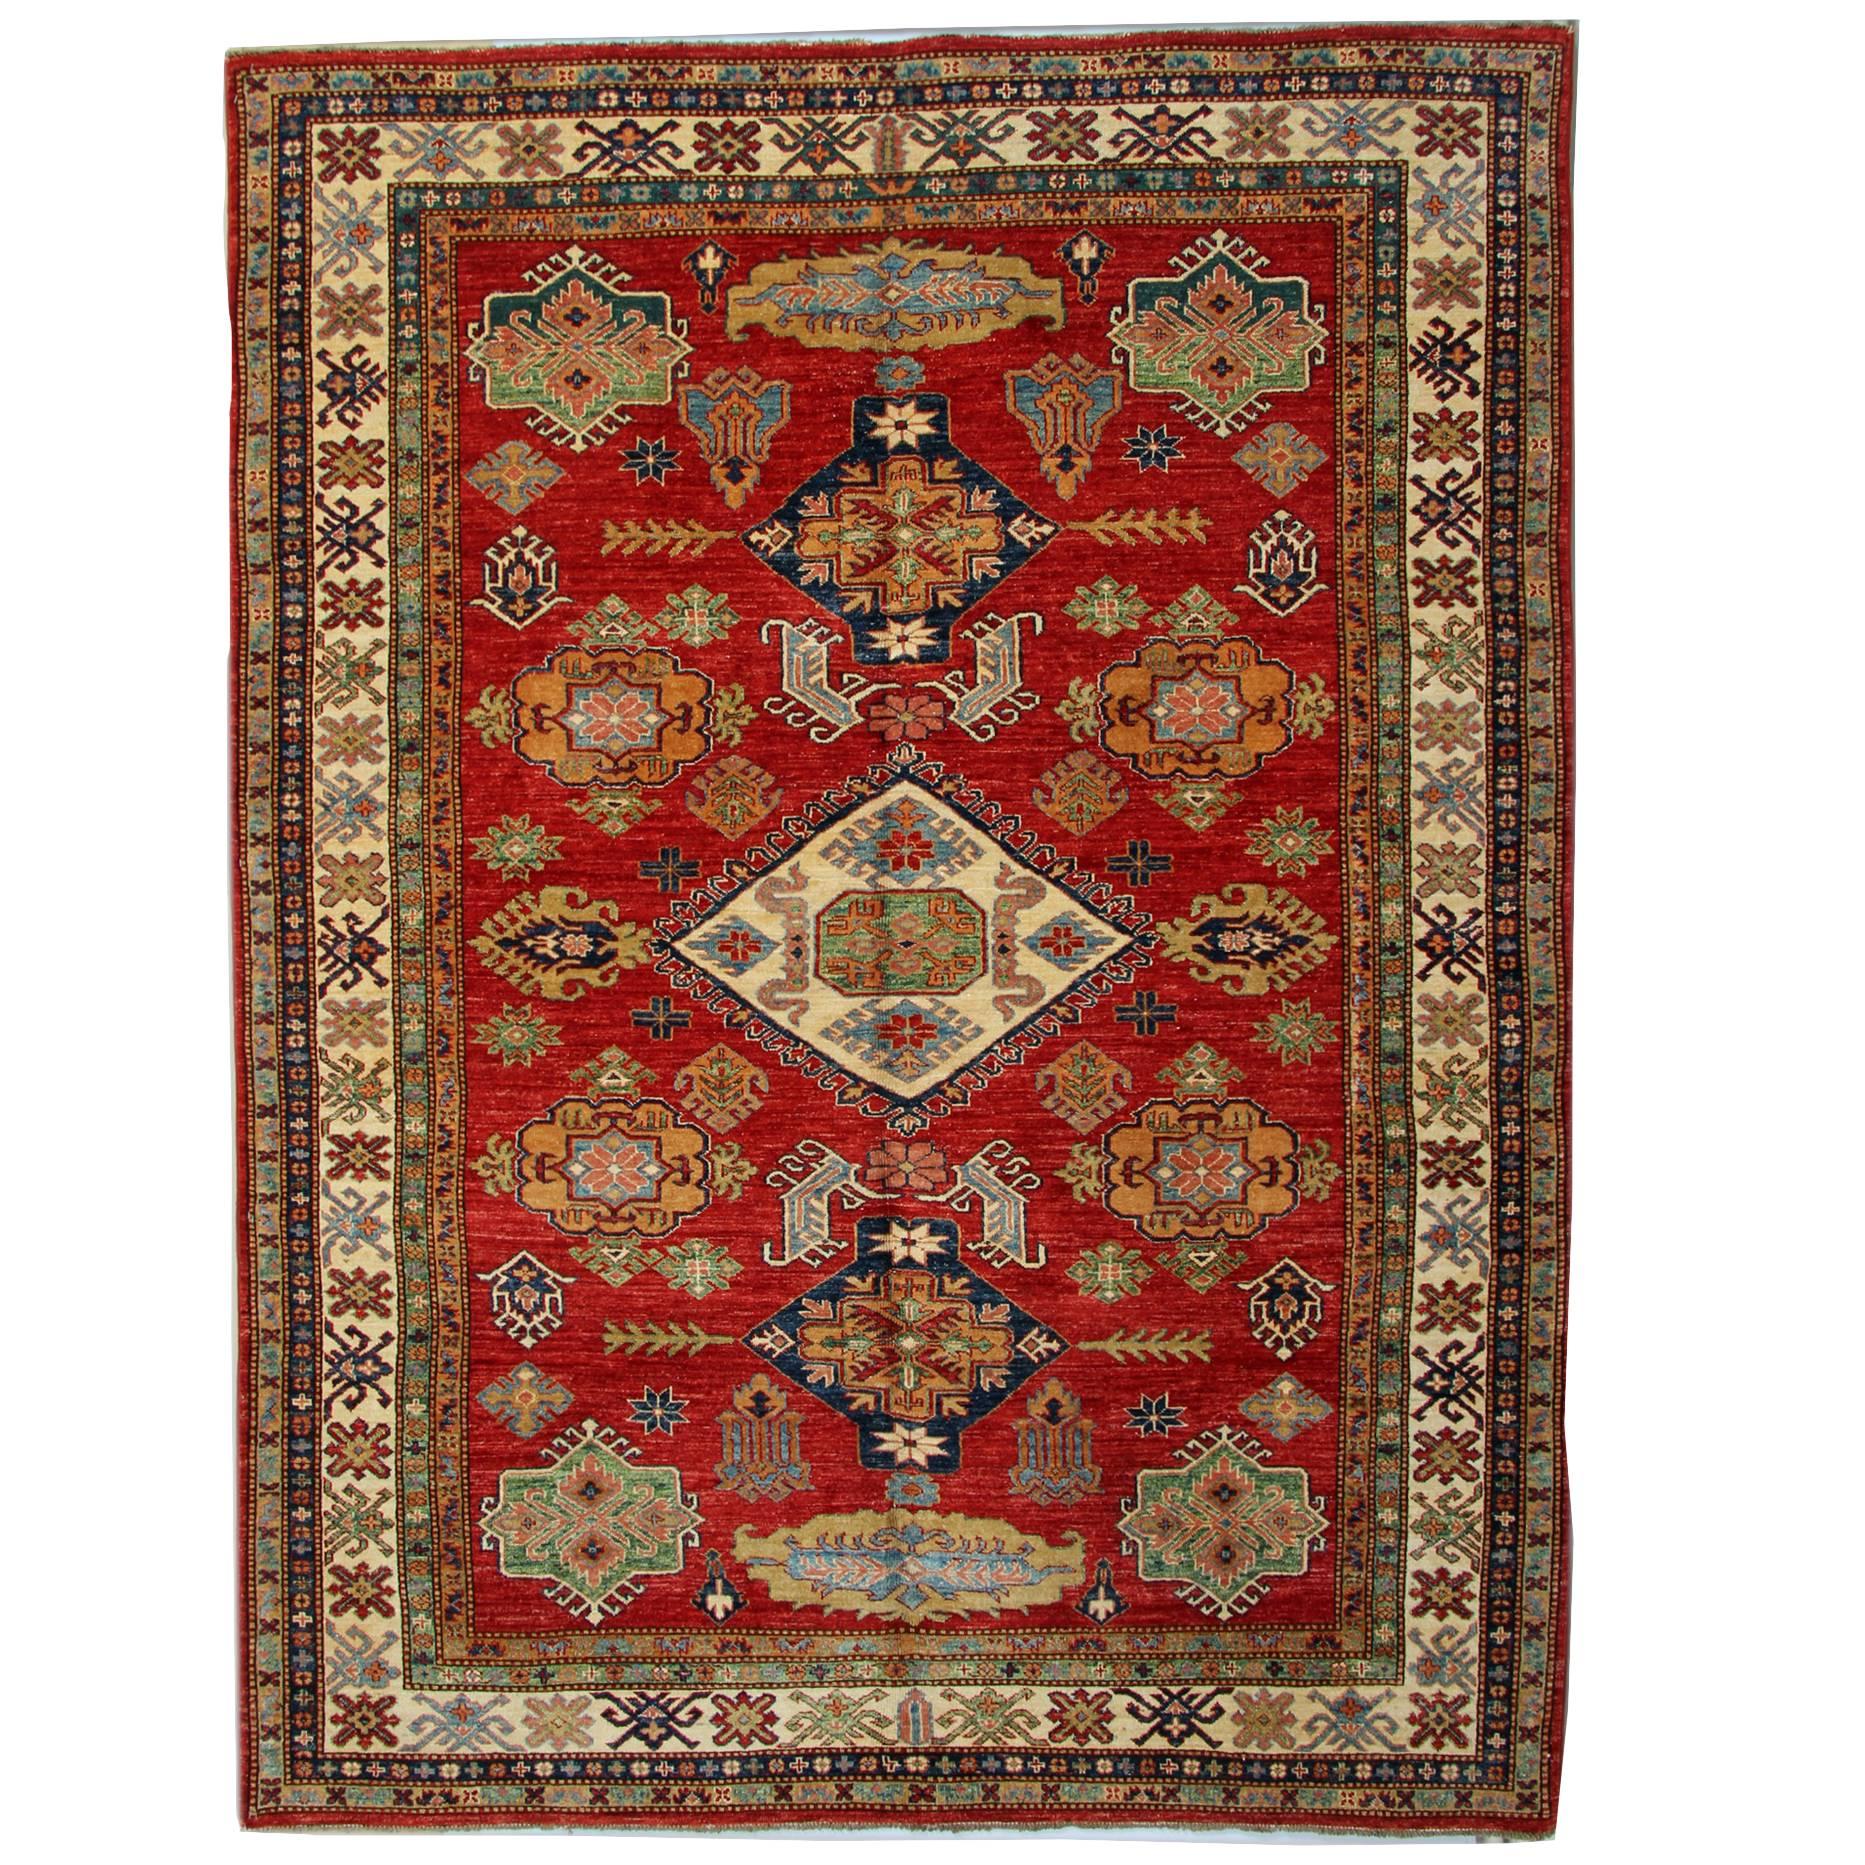 Geometric Red Rugs, Afghan Rugs, Kazak Rugs, Carpet from Afghanistan